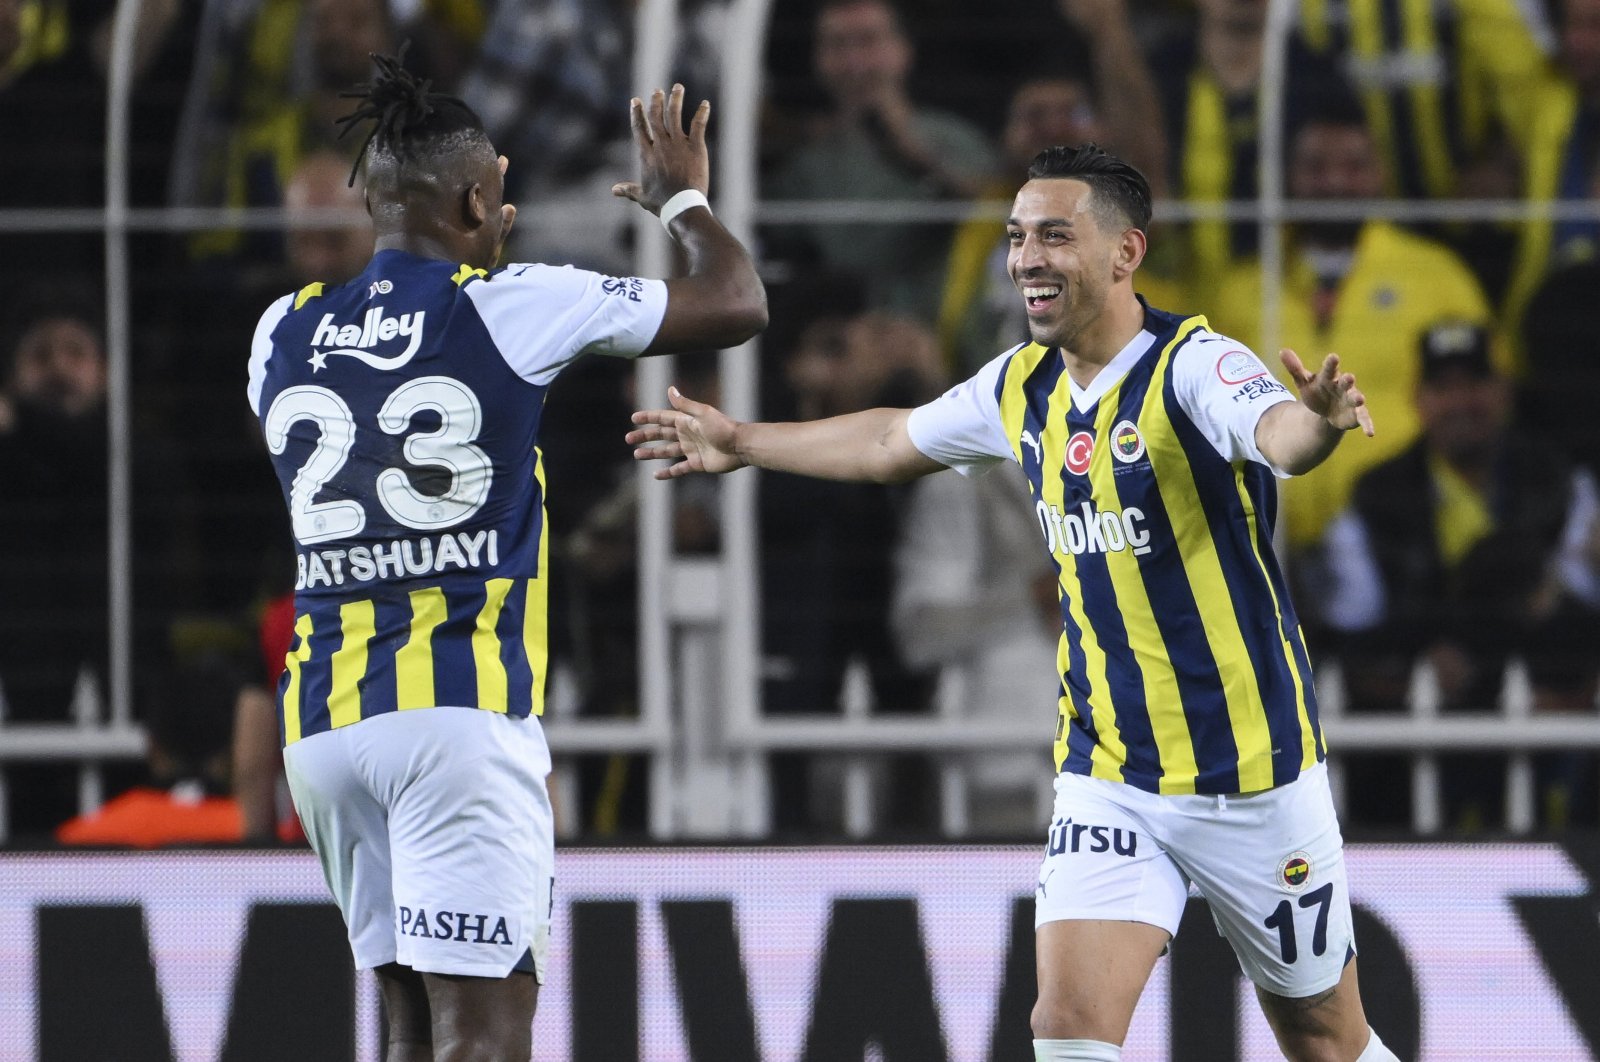 Fenerbahçe keep Süper Lig title hopes alive after edging Beşiktaş